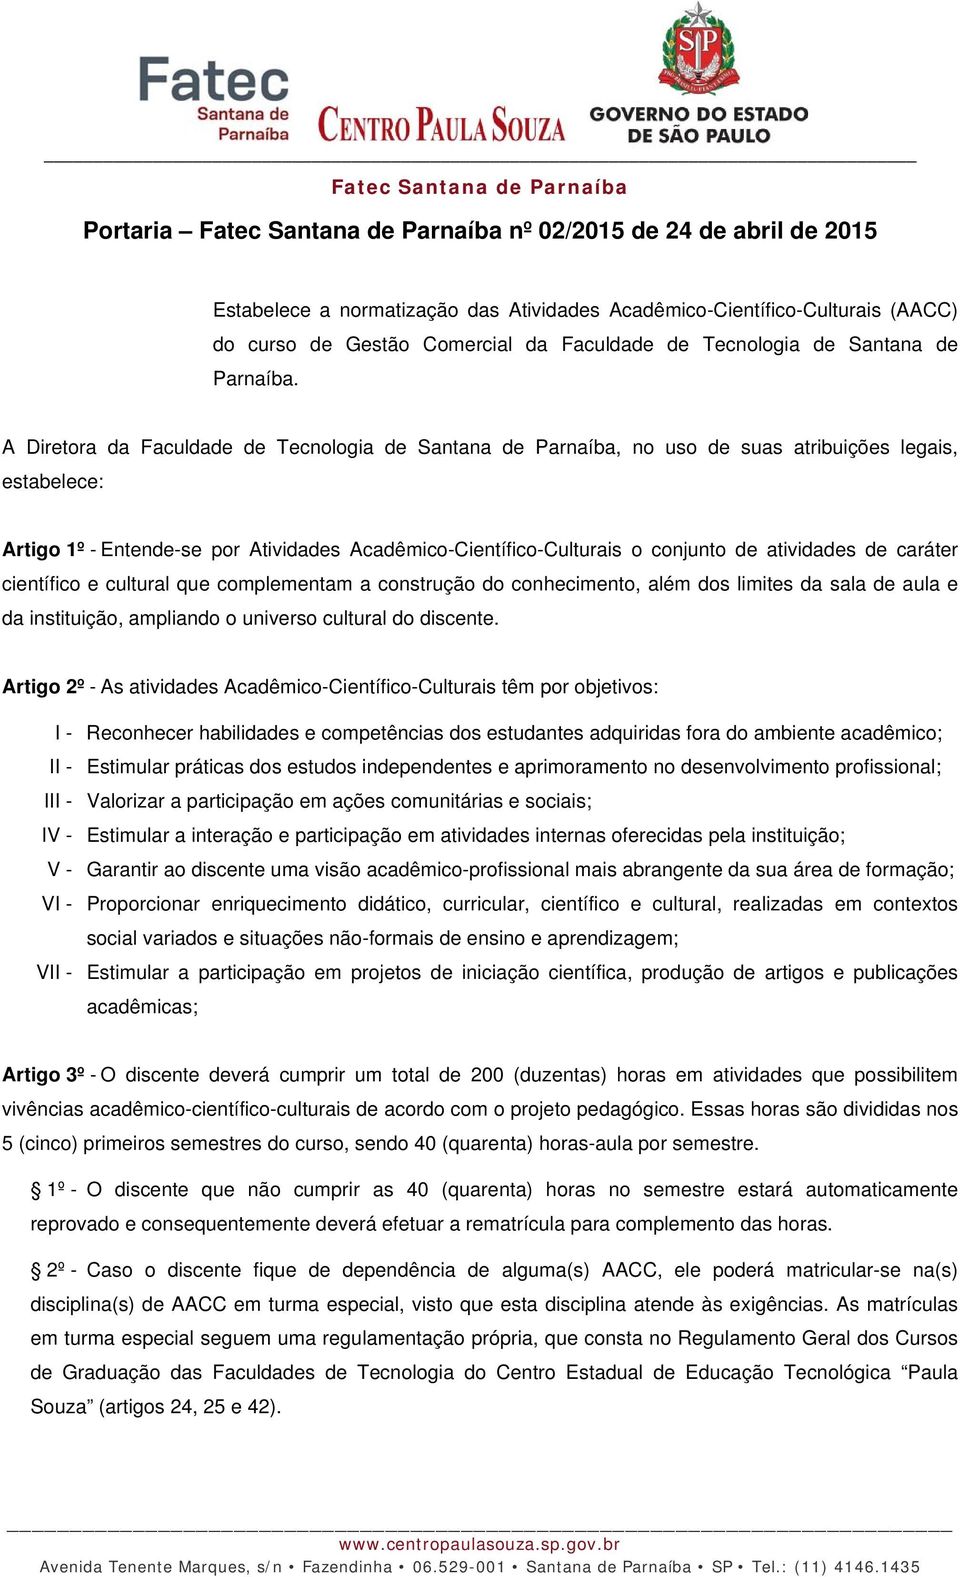 A Diretora da Faculdade de Tecnologia de Santana de Parnaíba, no uso de suas atribuições legais, estabelece: Artigo 1º - Entende-se por Atividades Acadêmico-Científico-Culturais o conjunto de